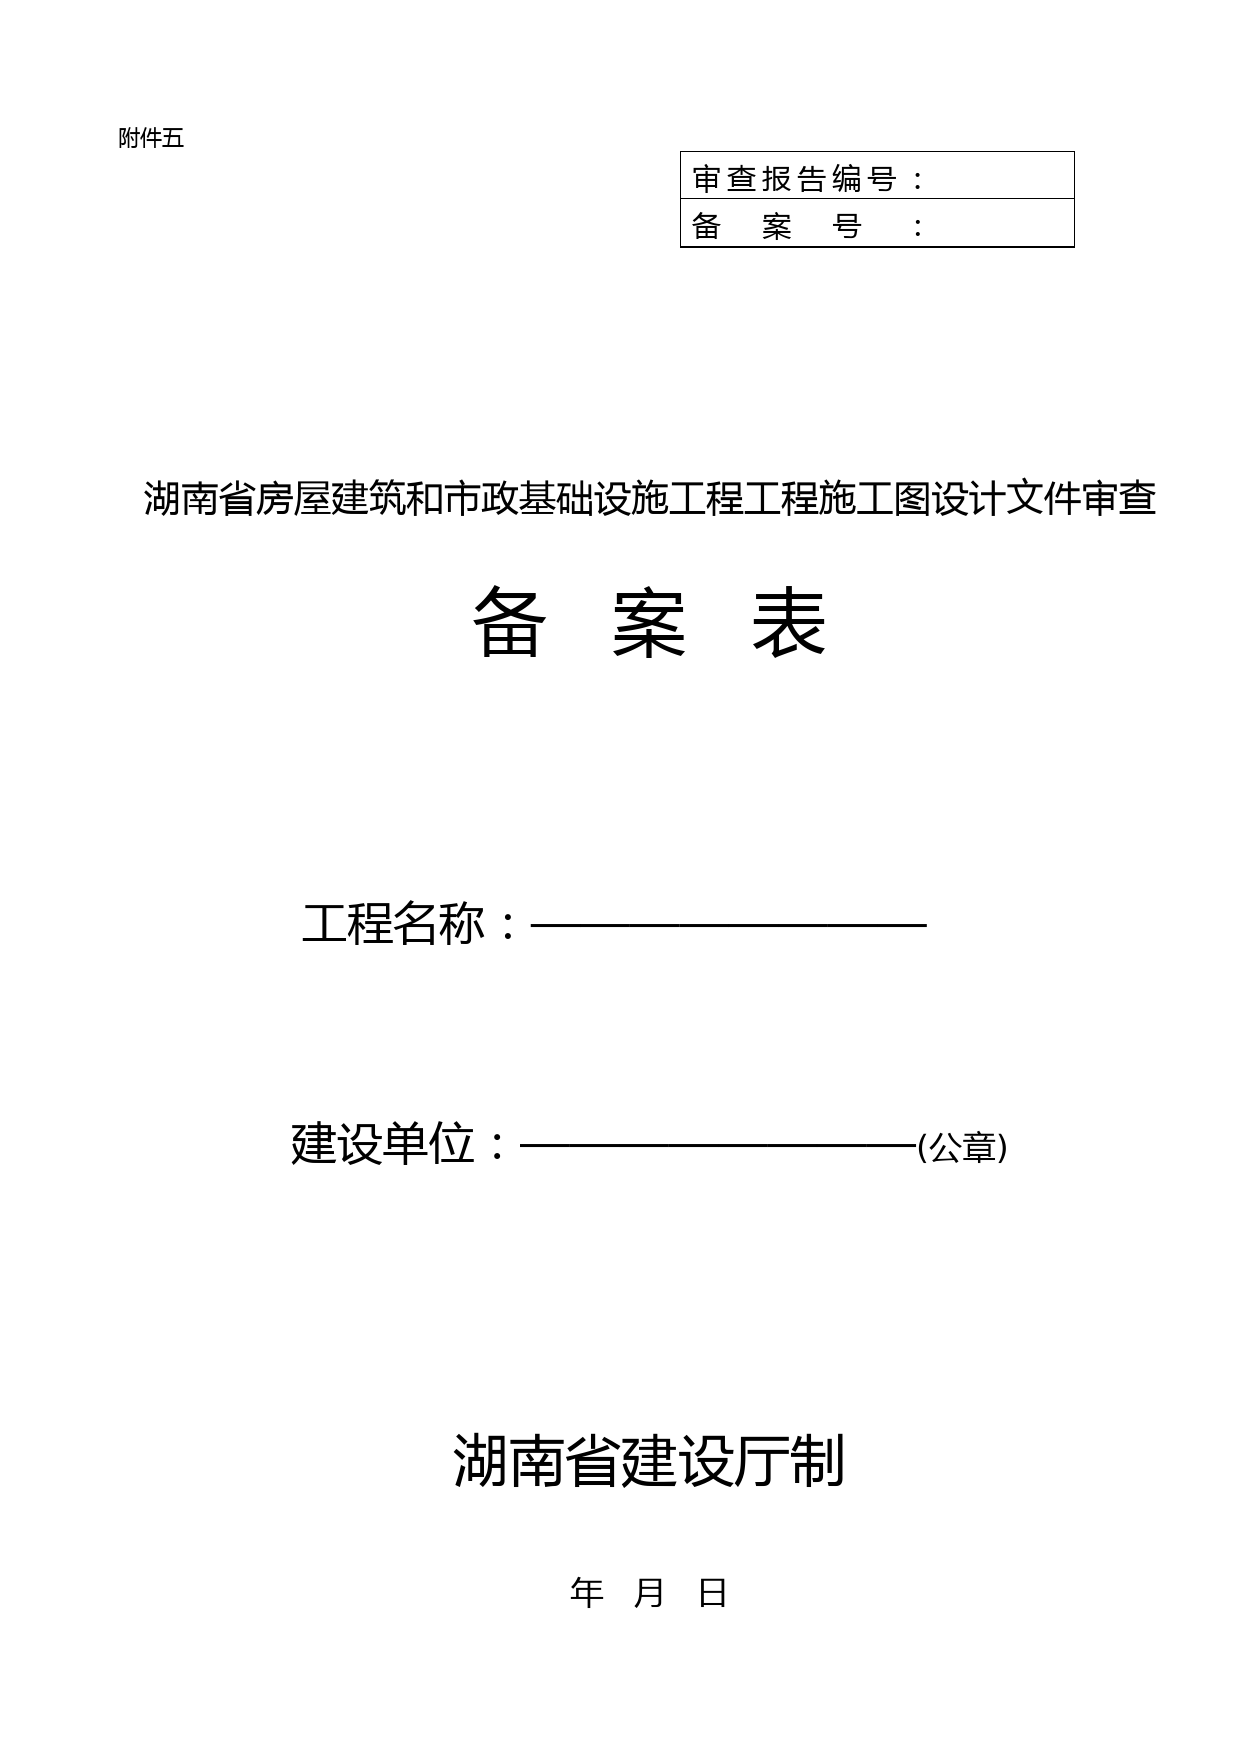 湖南省房屋建筑和市政基础设施工程工程施工图设计文件审查申报表